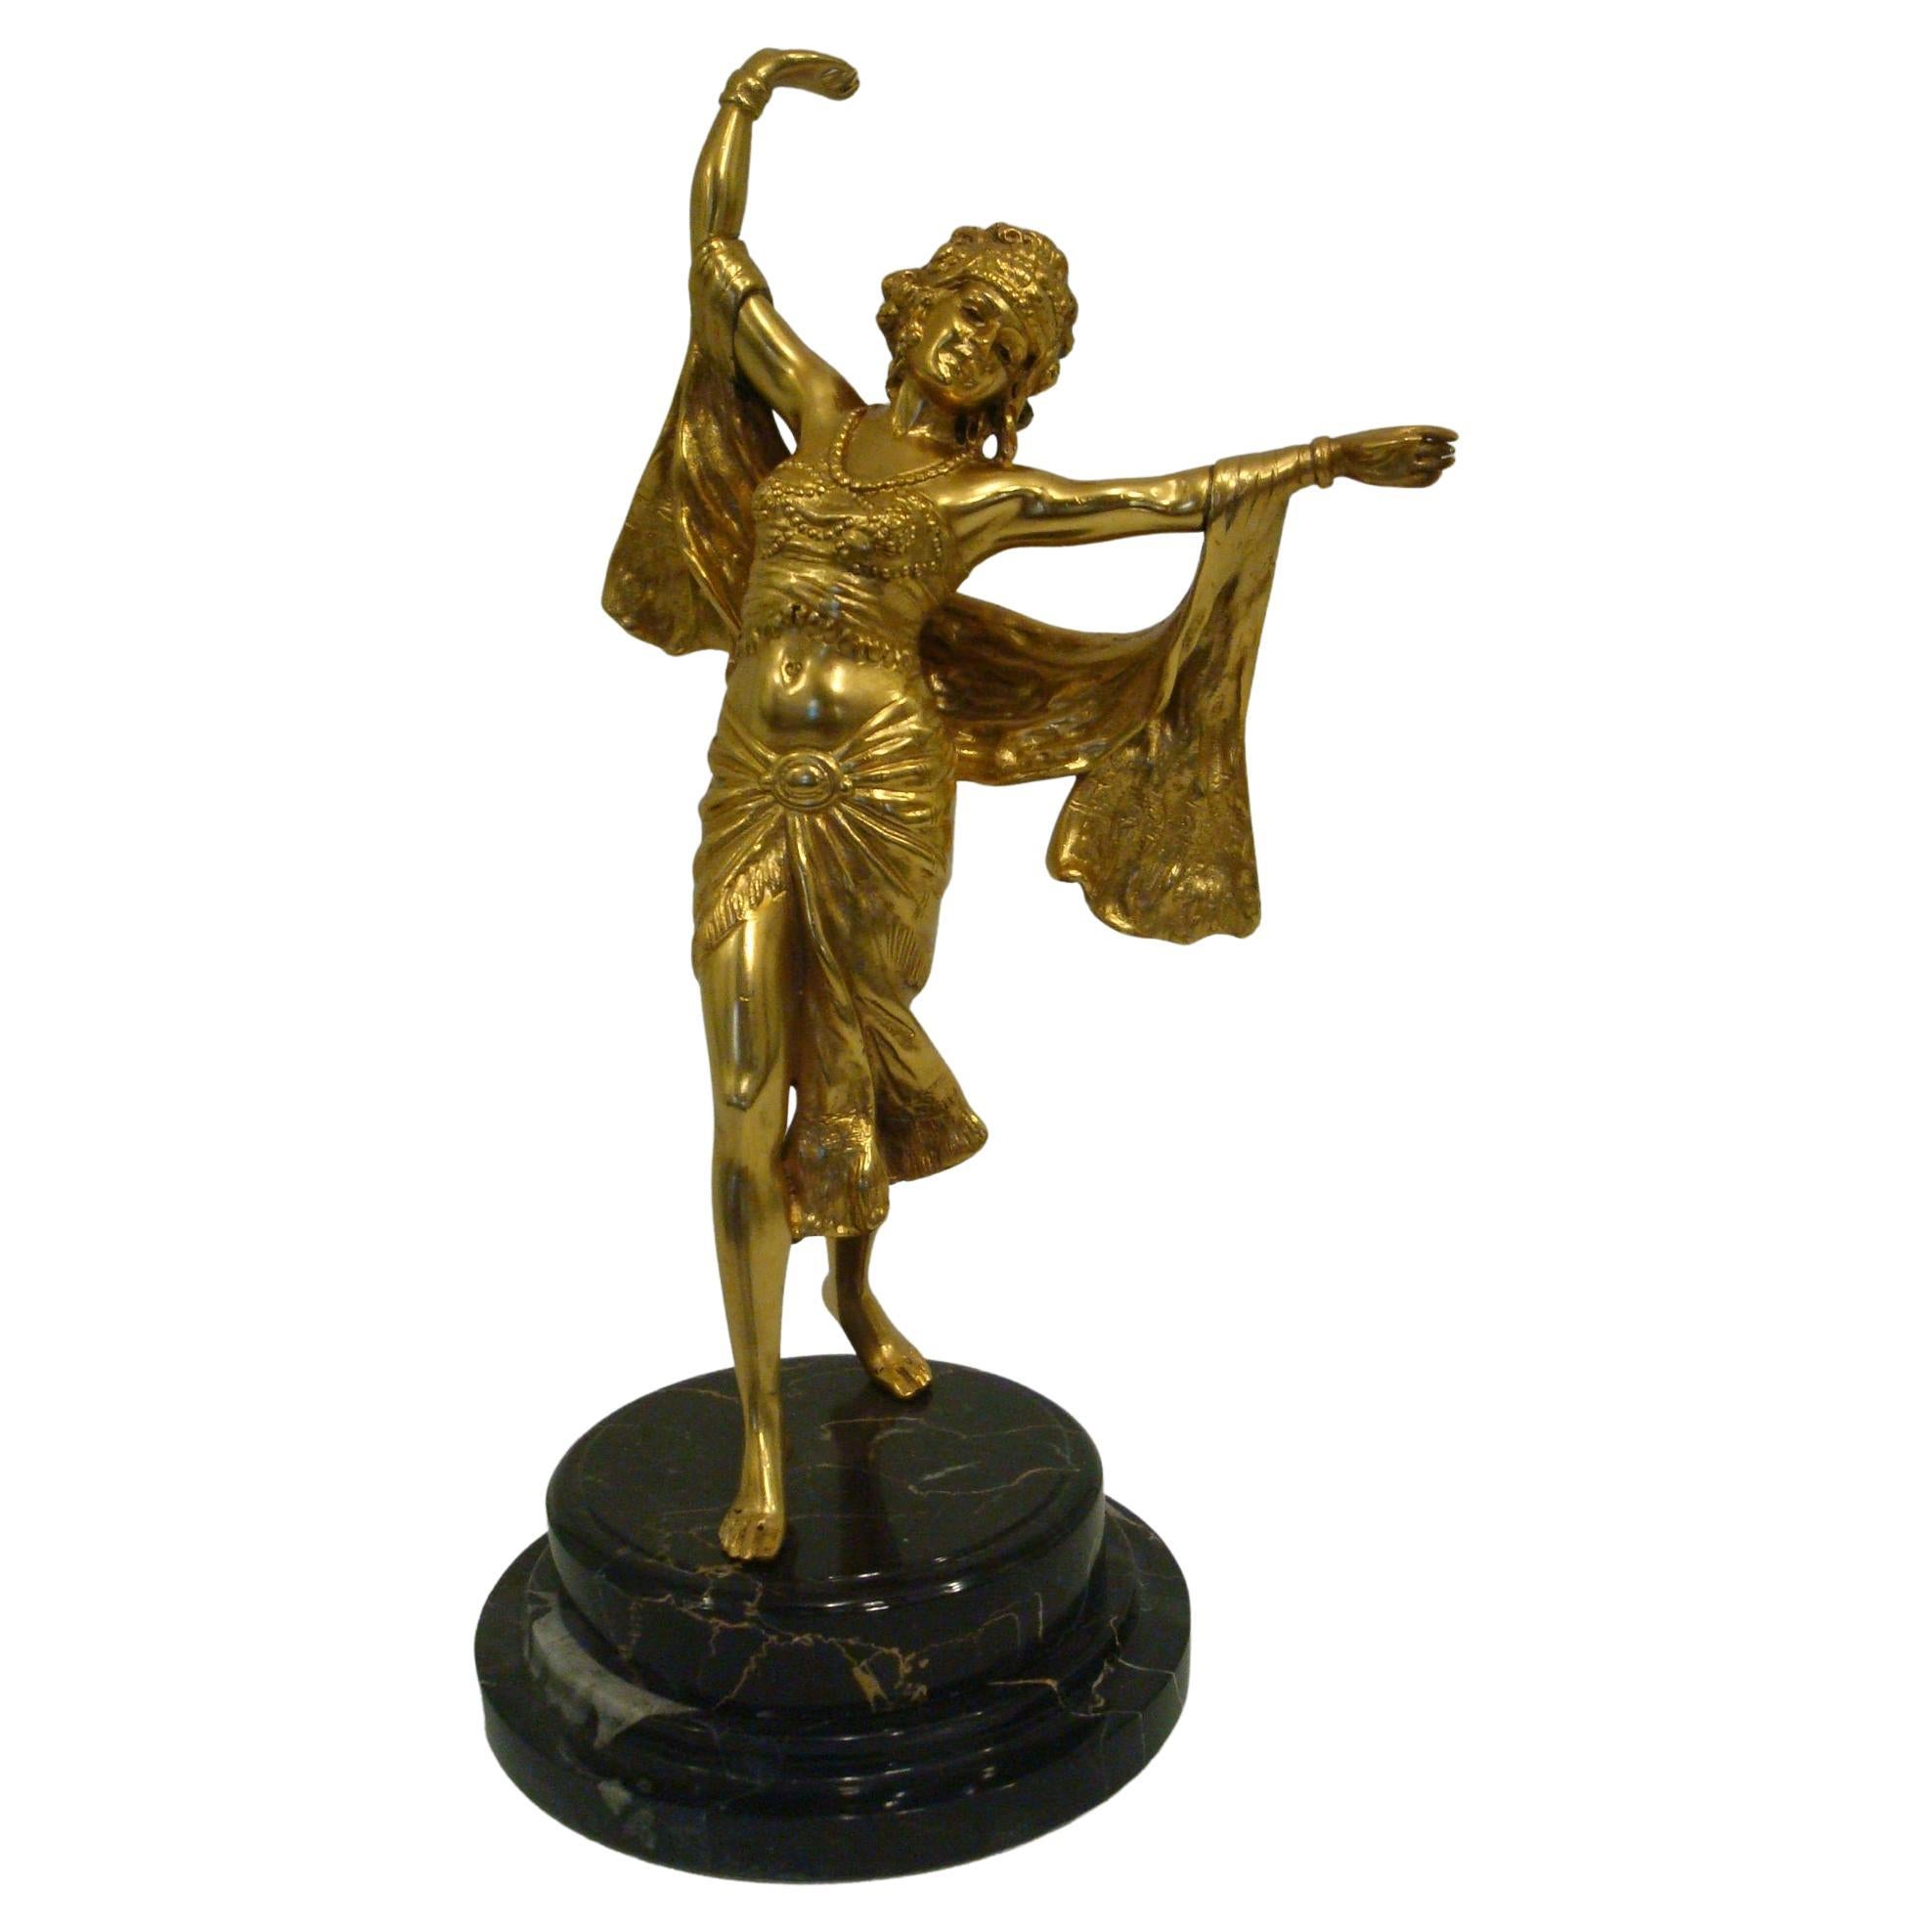 Richard Thuss - Figure autrichienne en bronze doré d'une femme orientale dansant